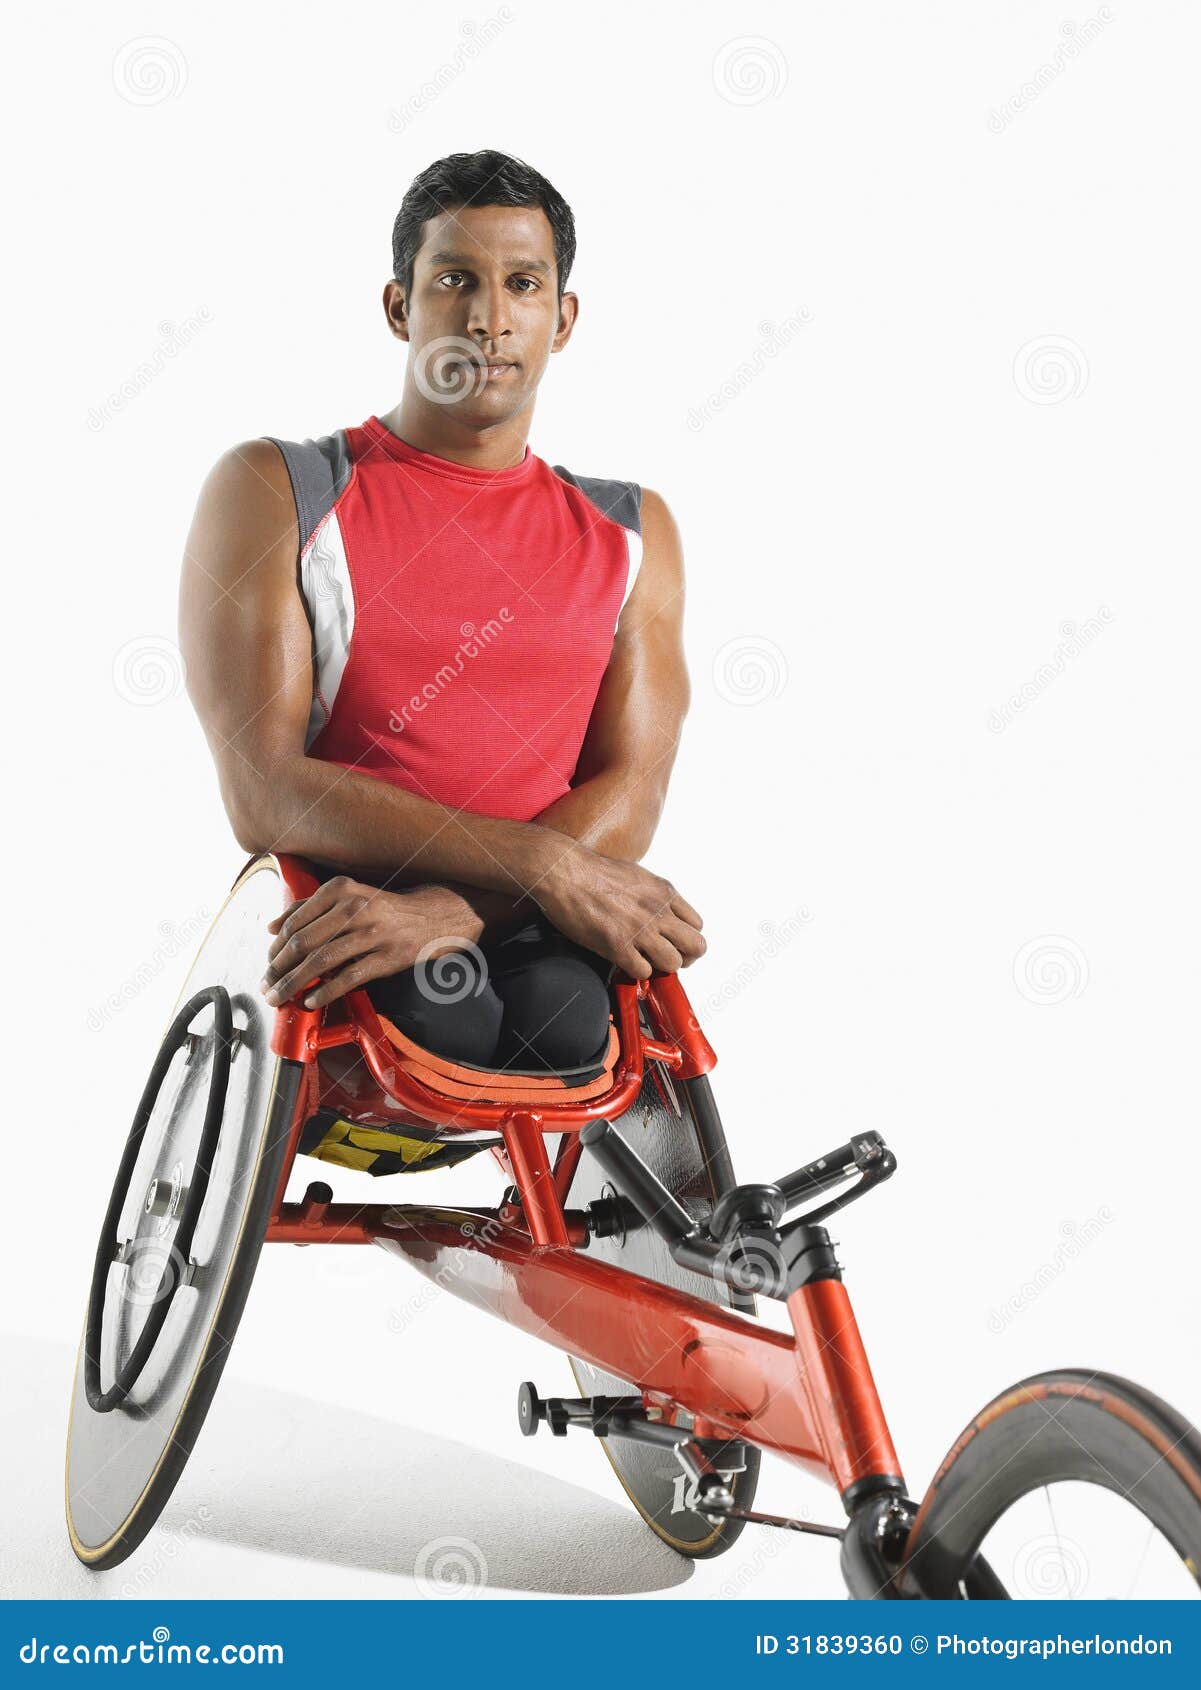 portrait of paraplegic cycler